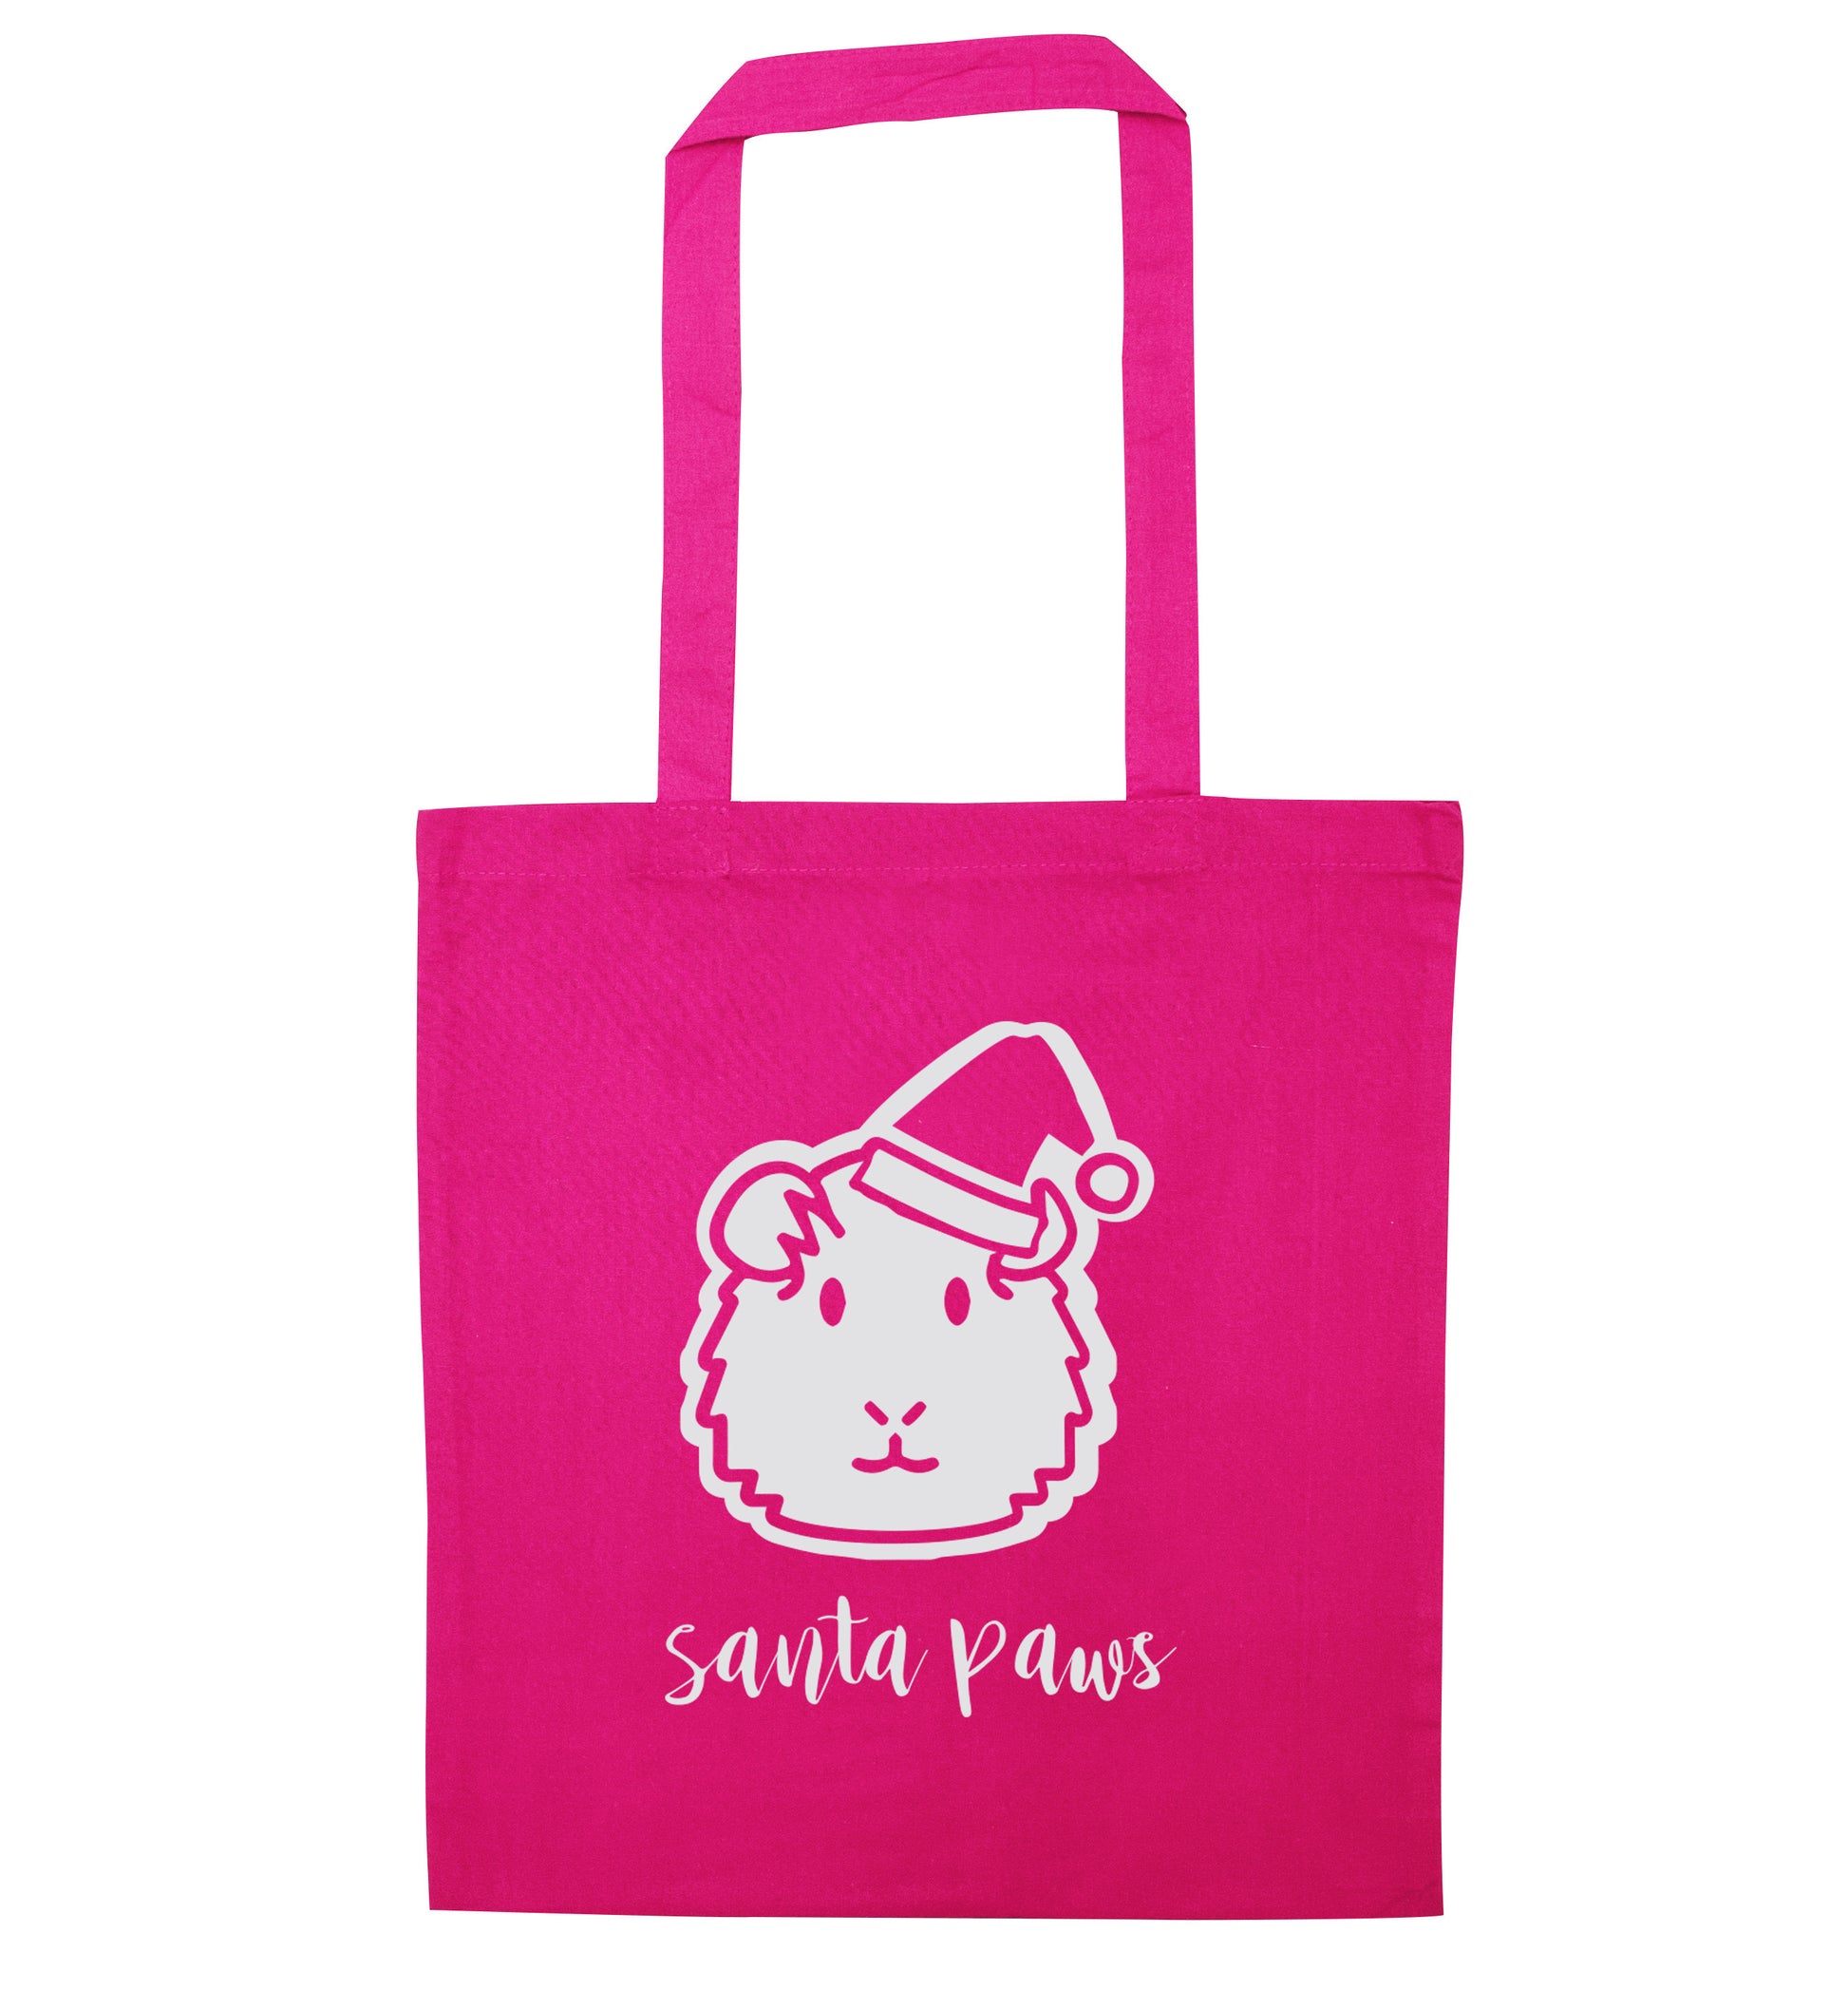 Guinea pig Santa Paws pink tote bag